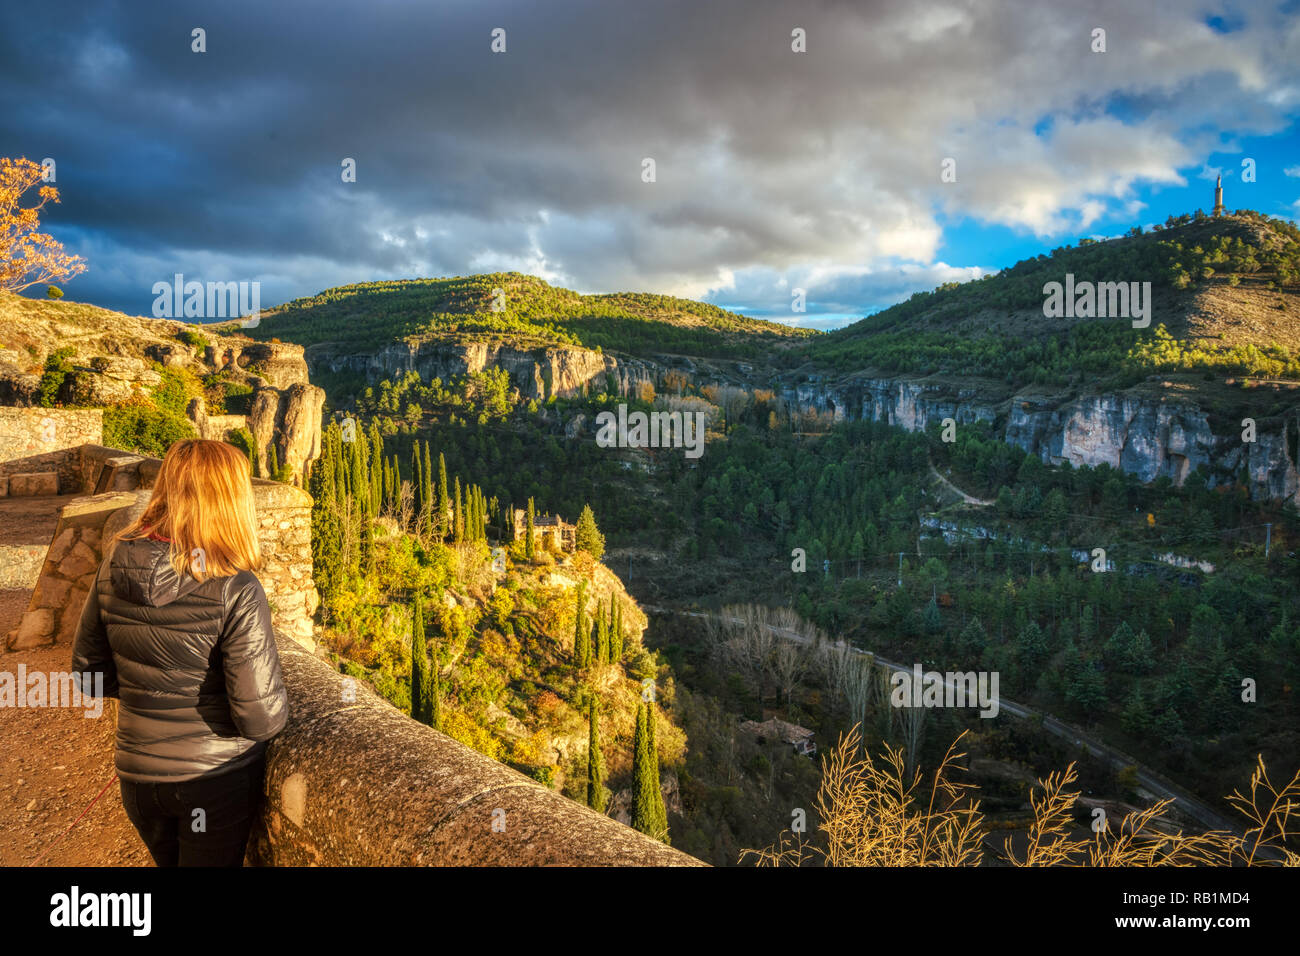 Une femme blonde à la recherche du haut château domaine de la Cuenca Espagne vers un canyon rocheux avec de vieux bâtiments, de grands conifères et moody nuages Banque D'Images